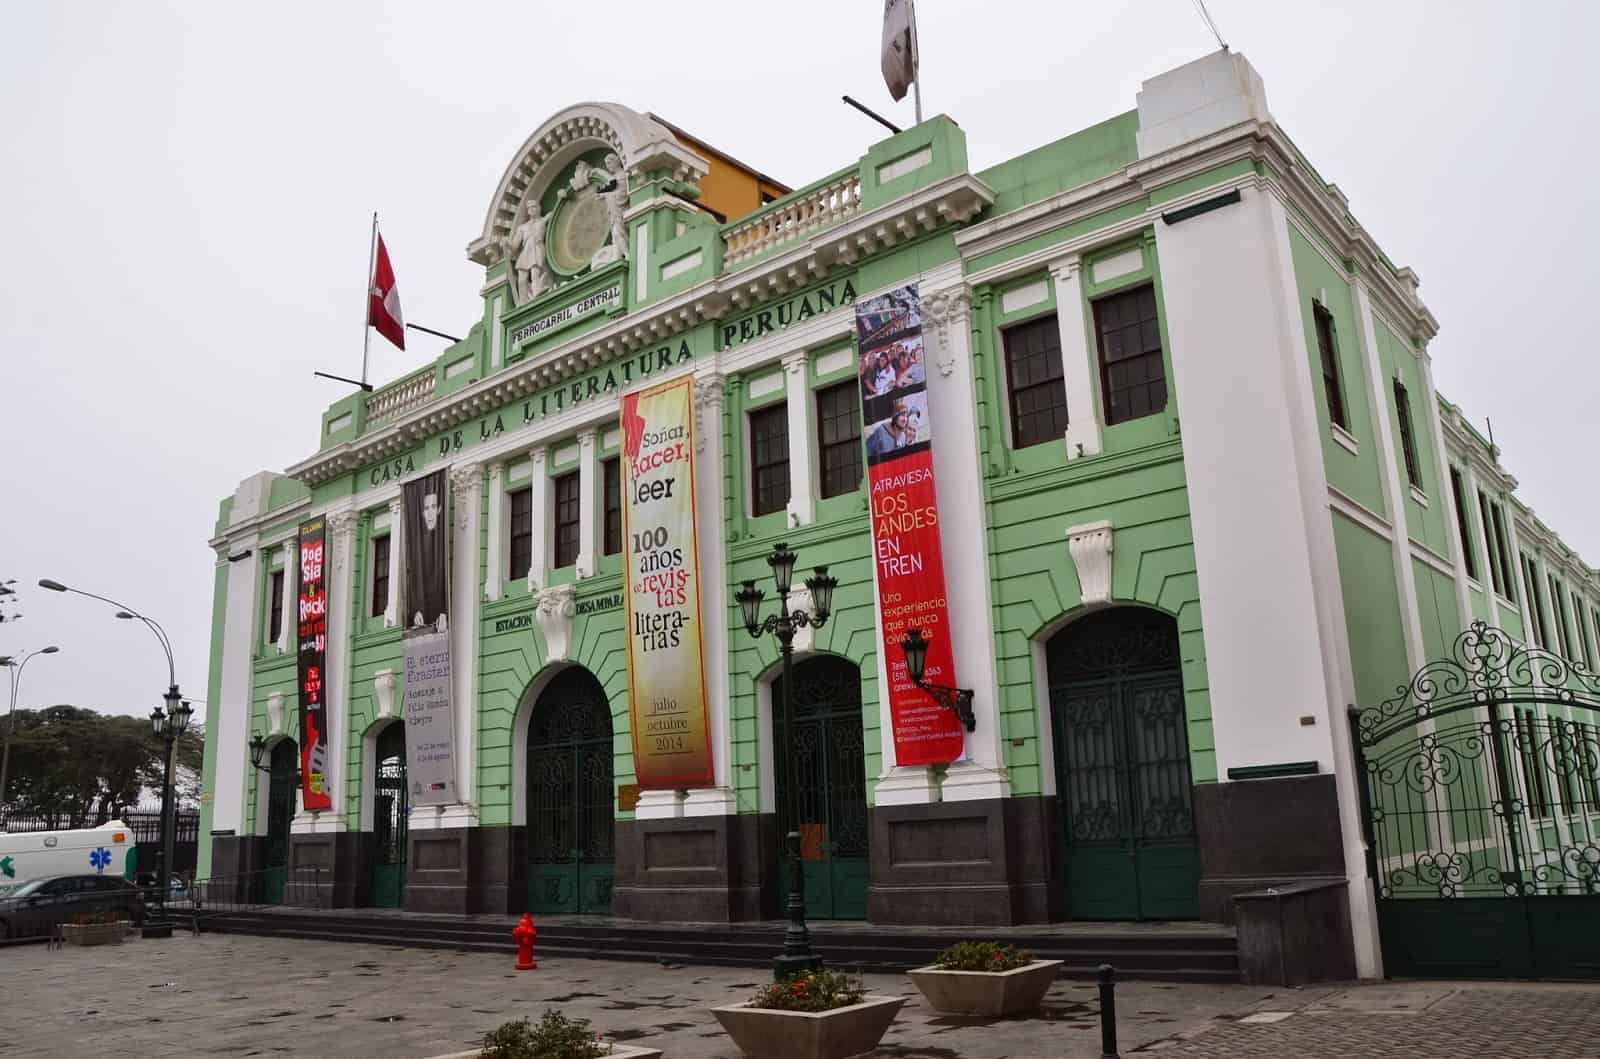 Desamparados Station in Lima, Peru